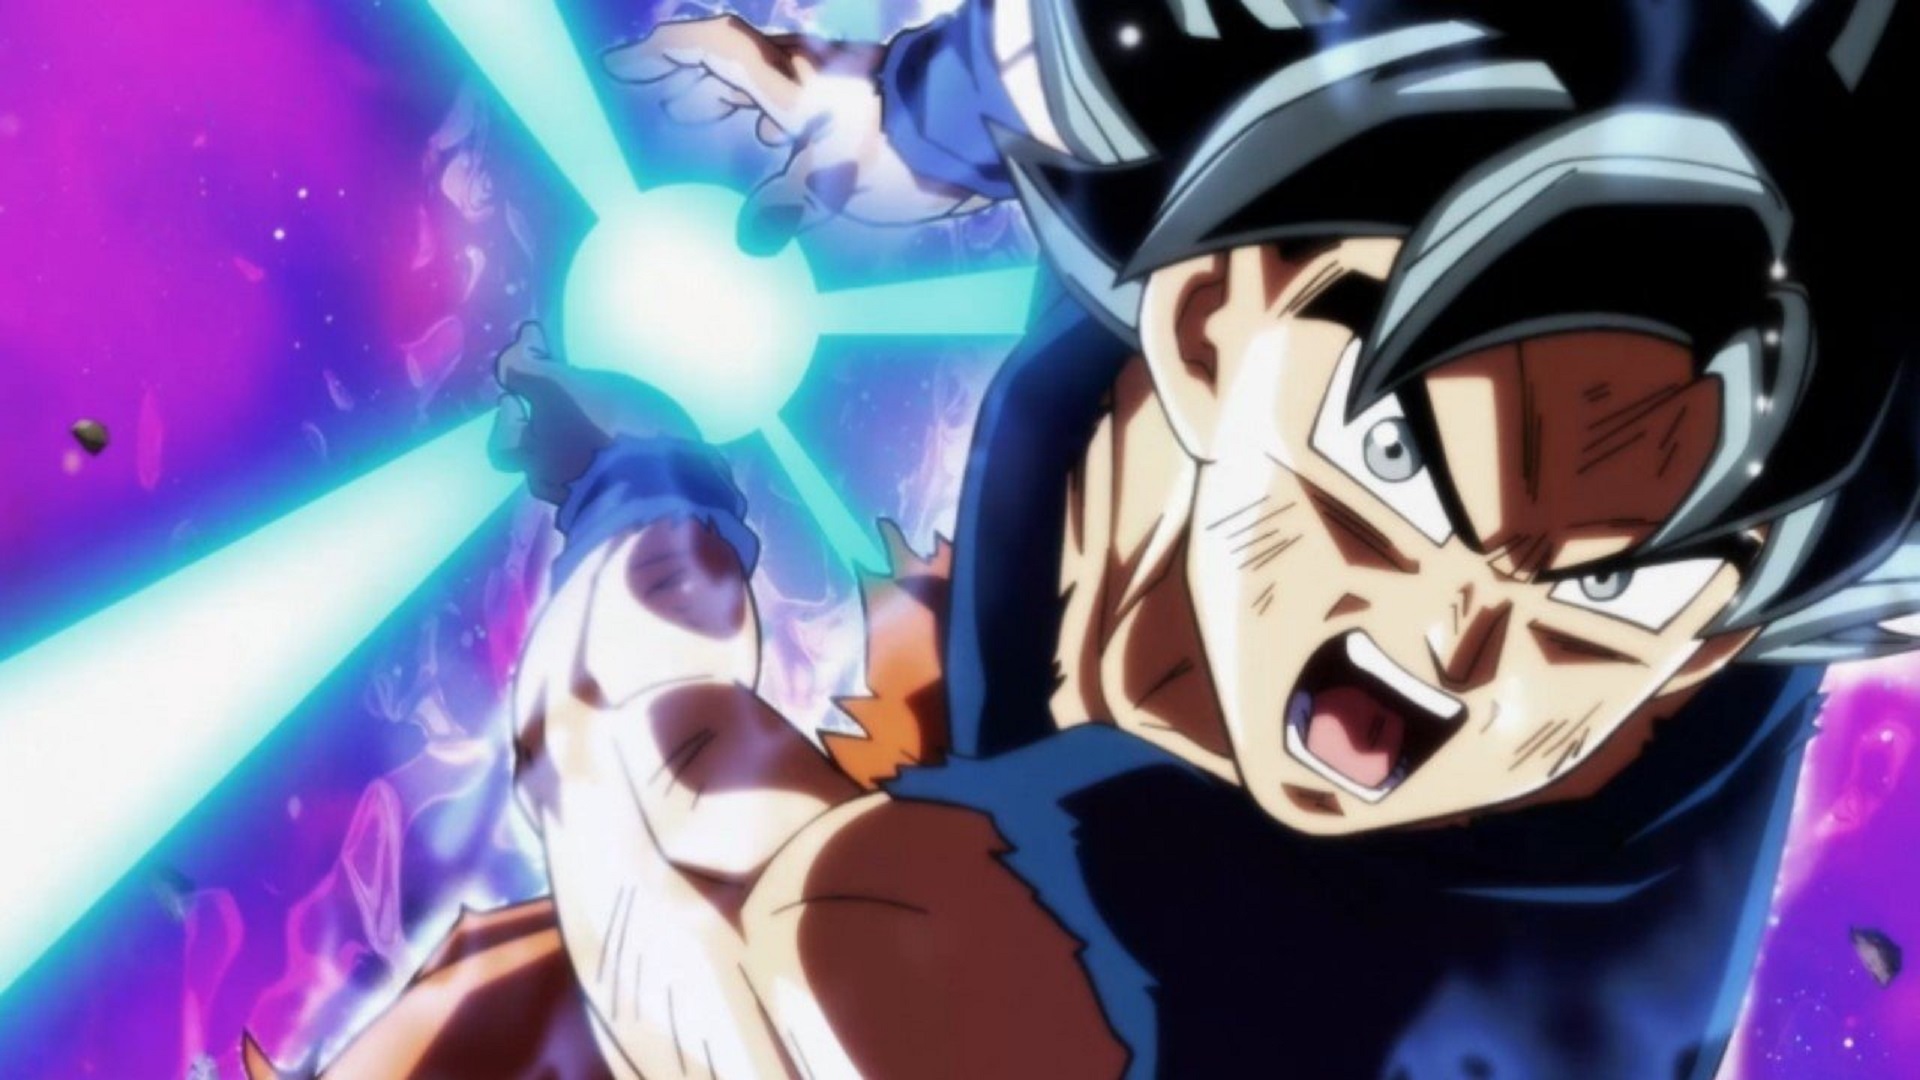 D. Ball Limit-F - Goku Instinto Superior vs Aios, a antiga Kaiohshin do  Tempo. É uma luta mais que divina.